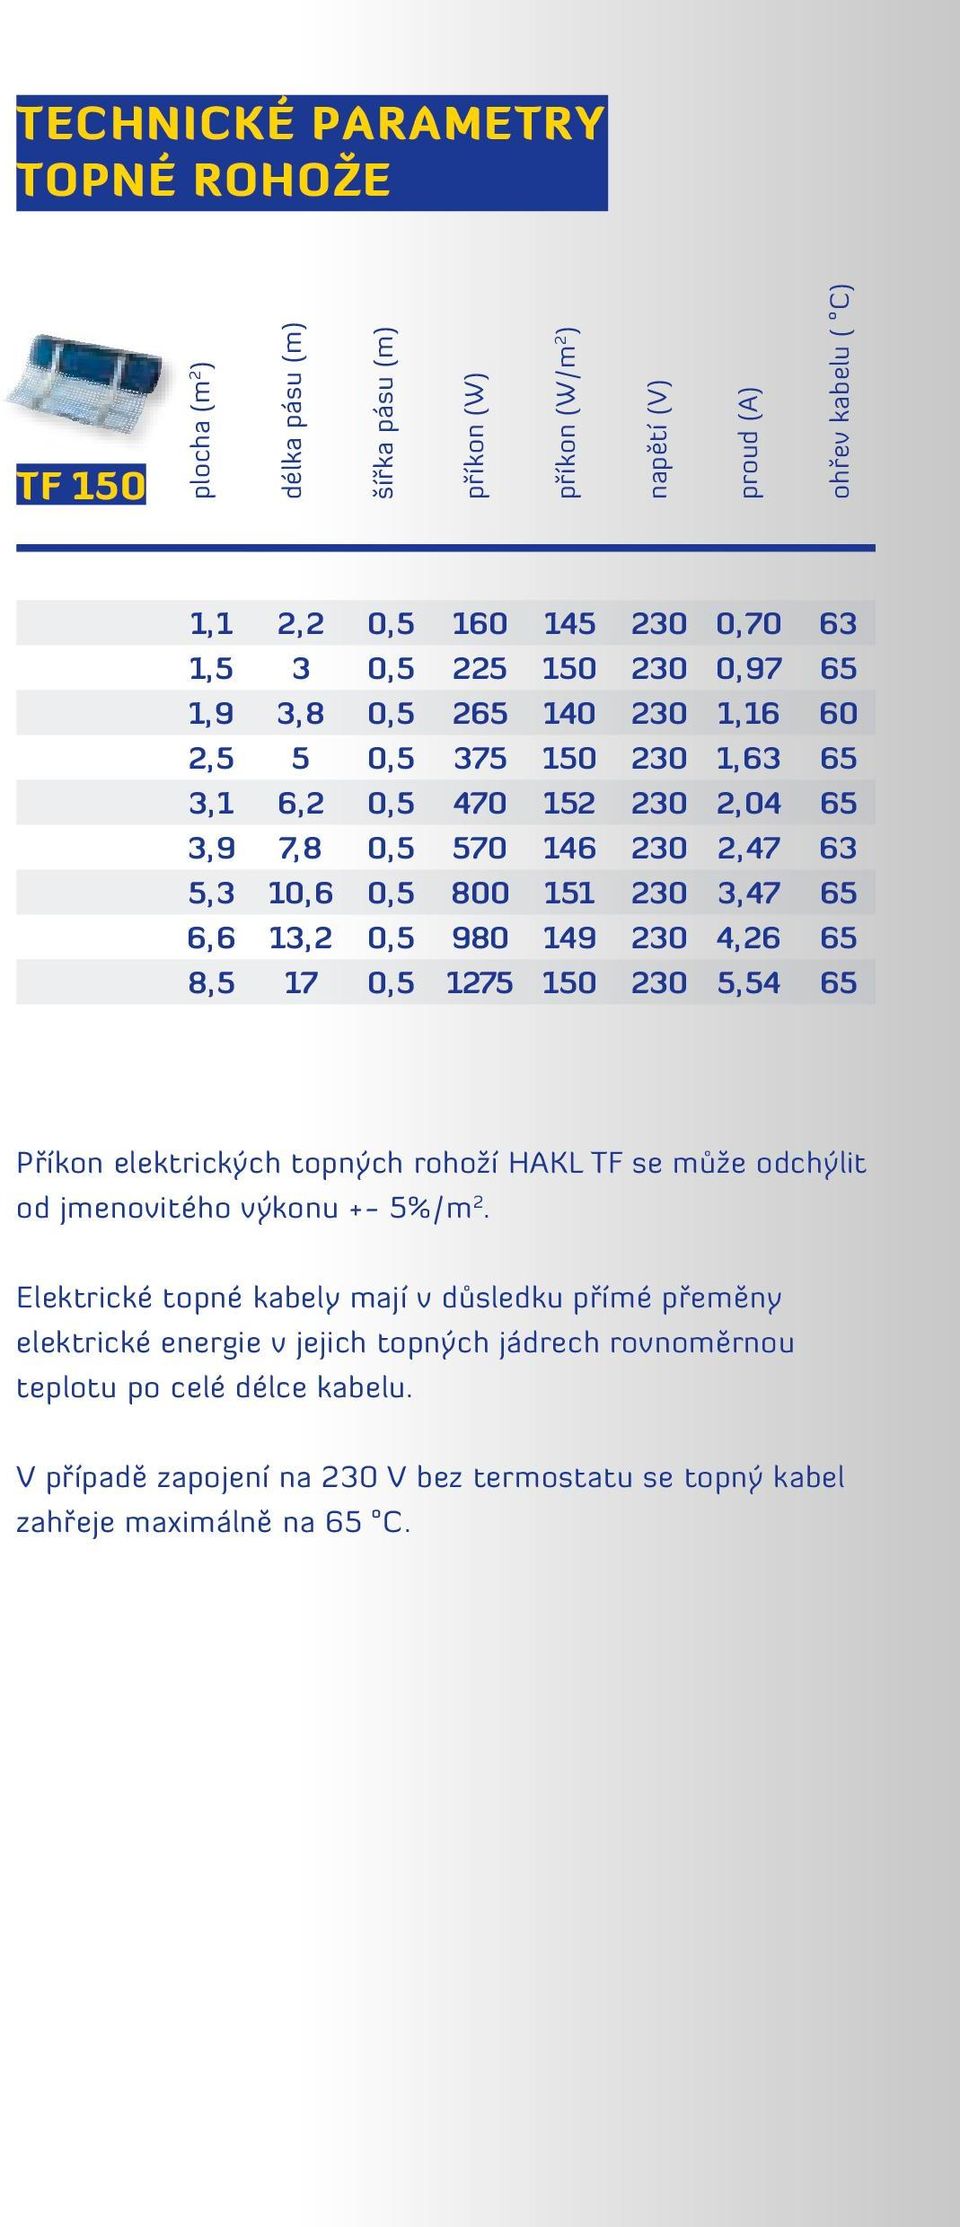 26 5, 54 63 65 60 65 65 63 65 65 65 Příkon elektrických topných rohoží HAKL TF se může odchýlit od jmenovitého výkonu +- 5% / m 2.